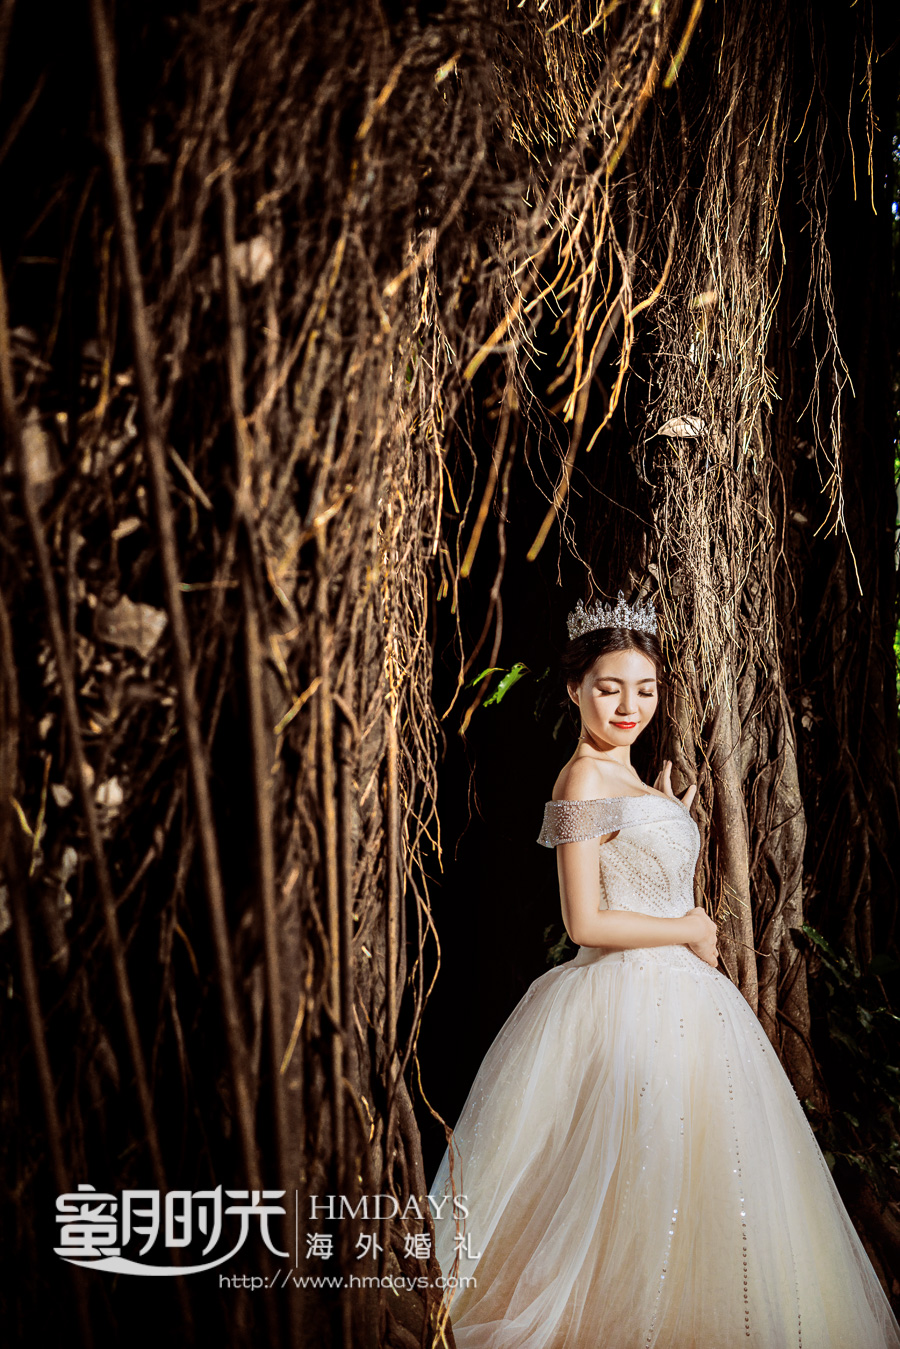 韩式新娘发型图片收集 打造婚礼上的动人焦点